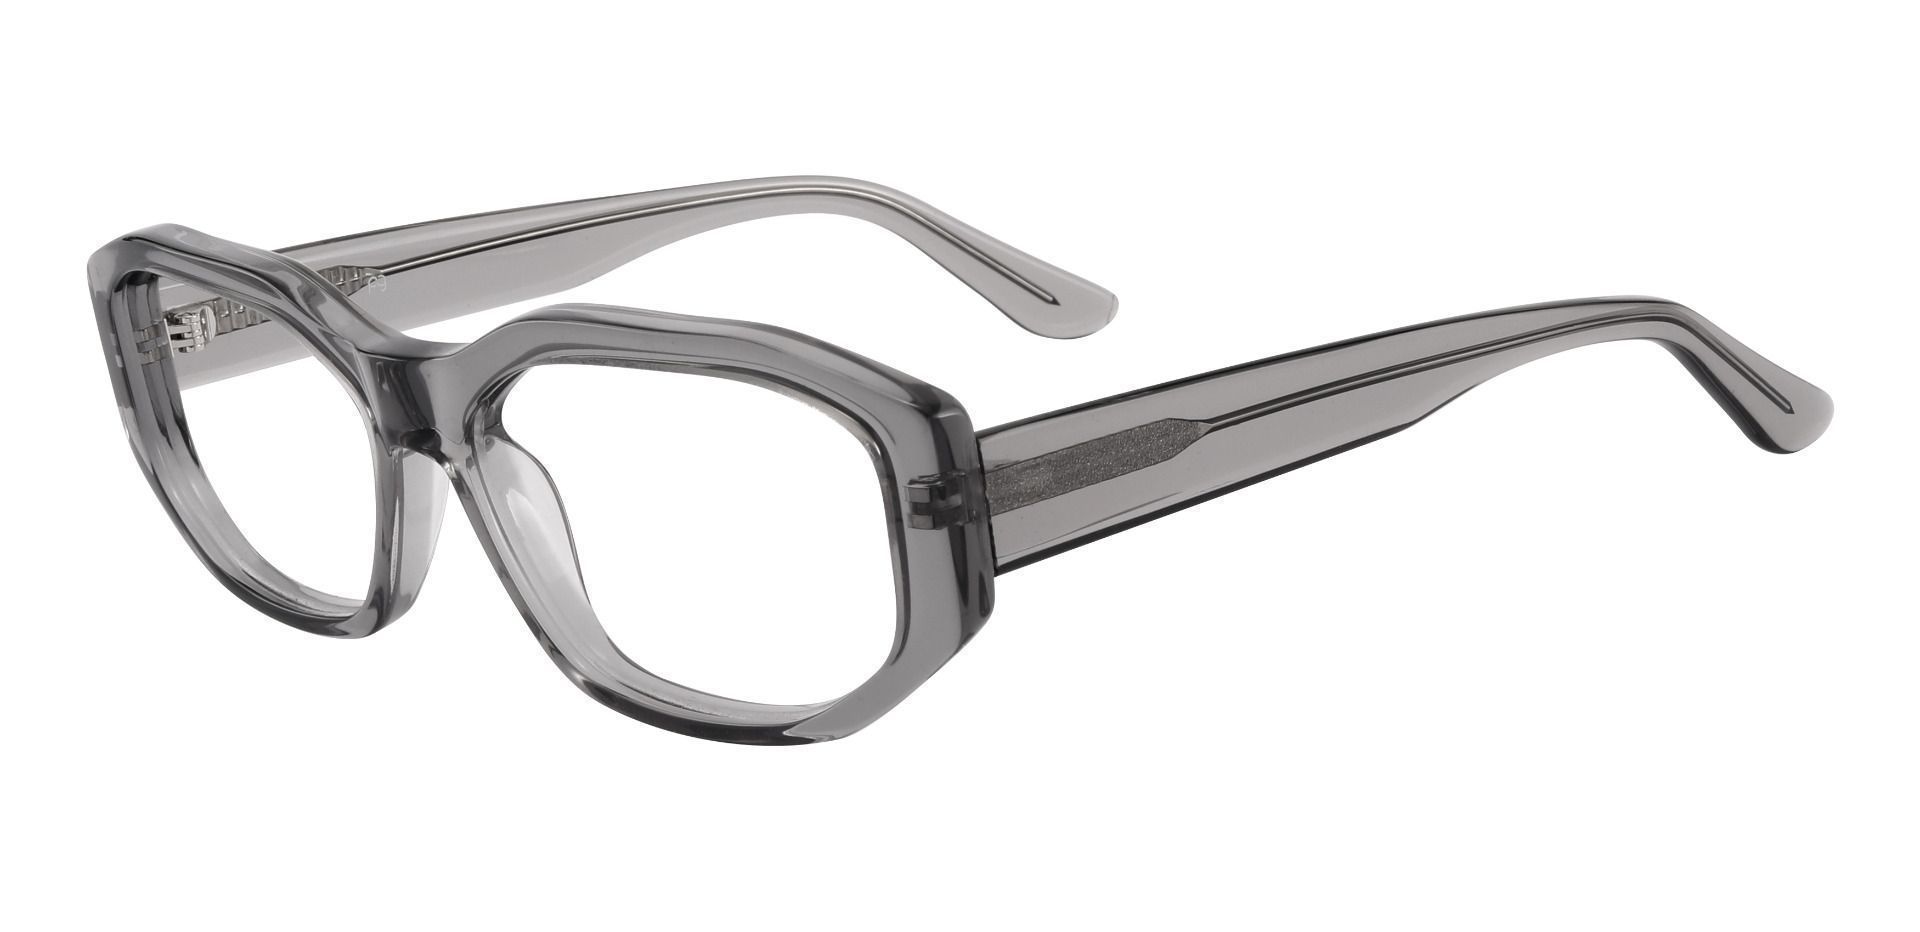 Sayre Rectangle Prescription Glasses - Gray